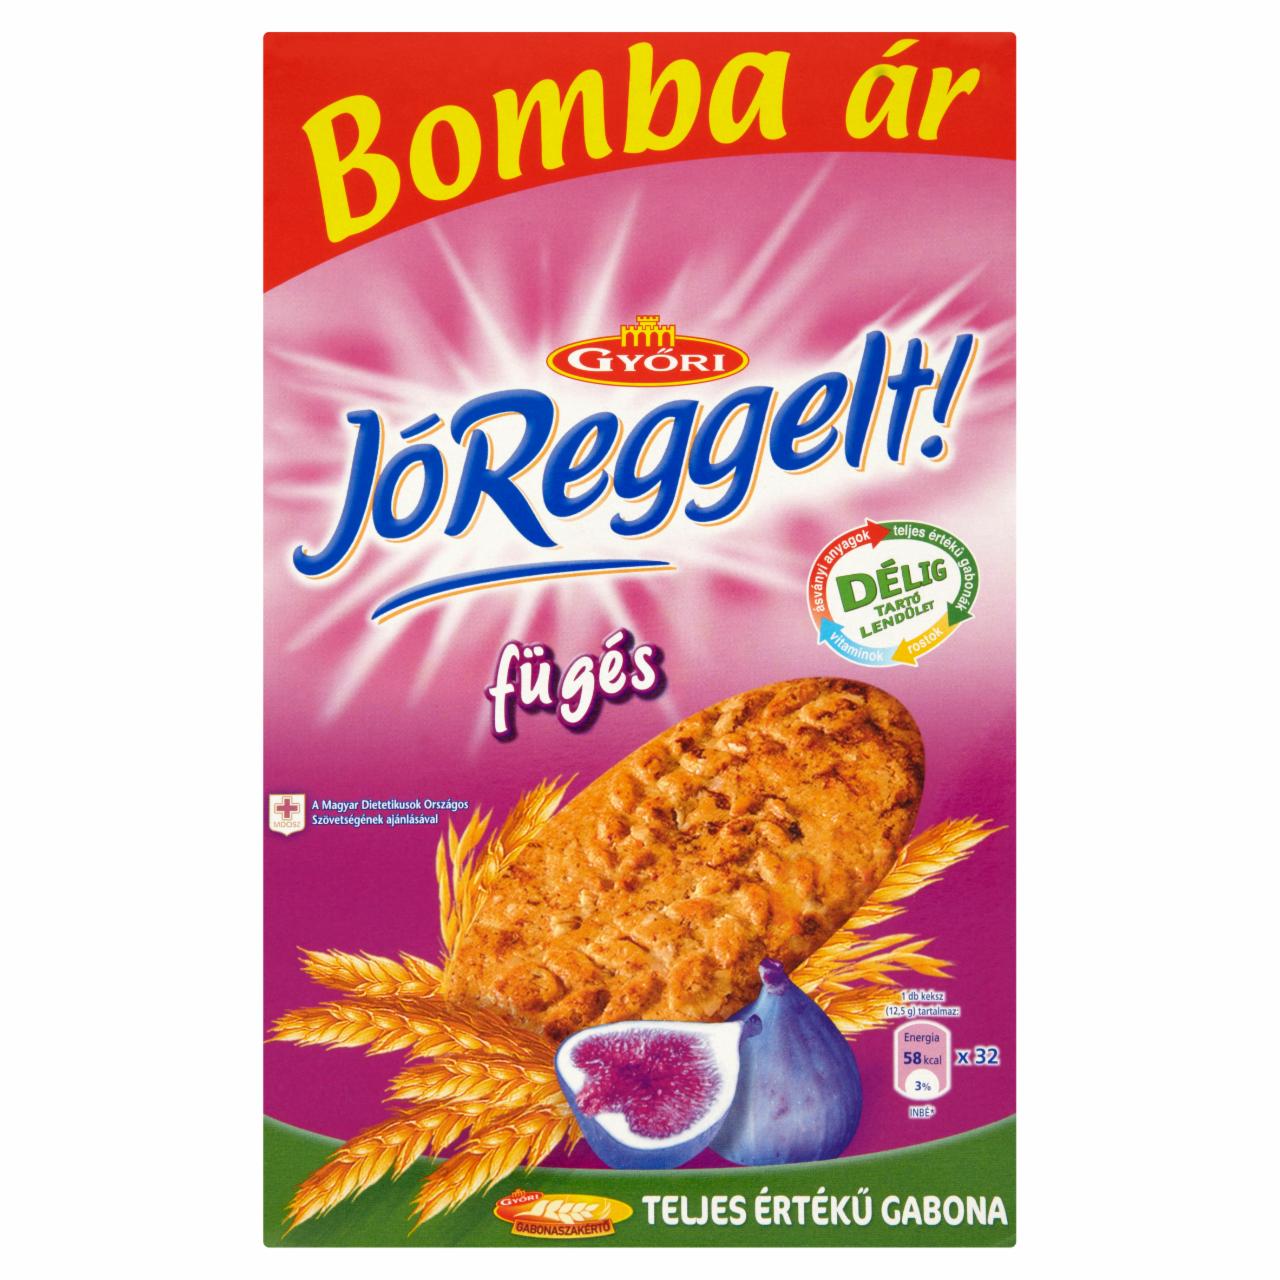 Képek - Győri JóReggelt! fügés keksz 8 x 50 g